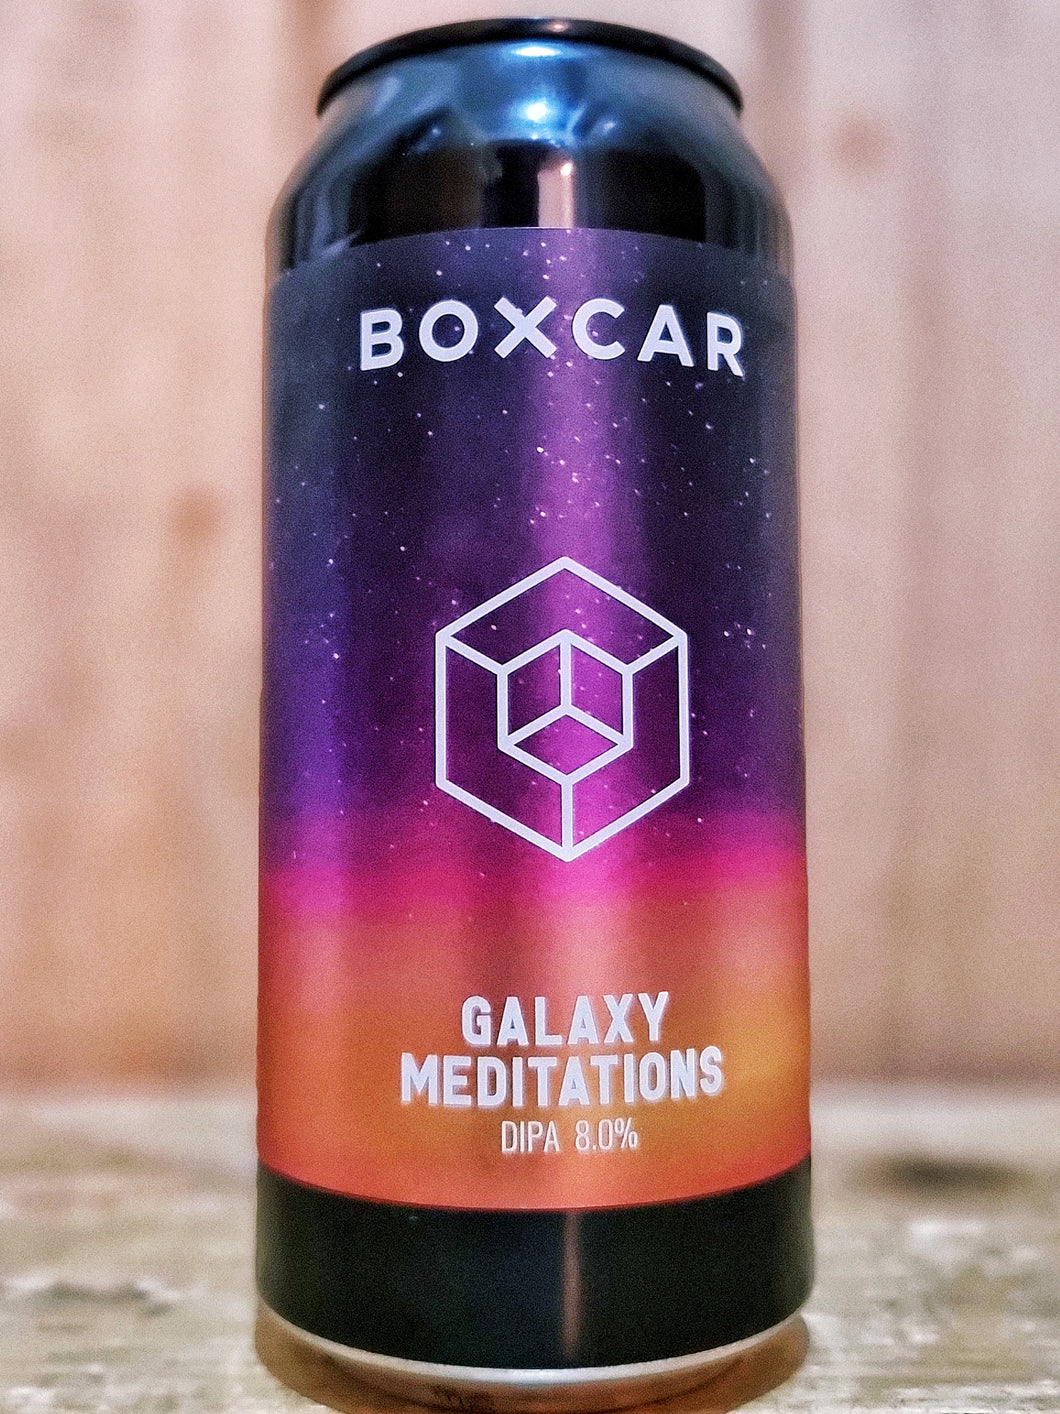 Boxcar - Galaxy Mediations